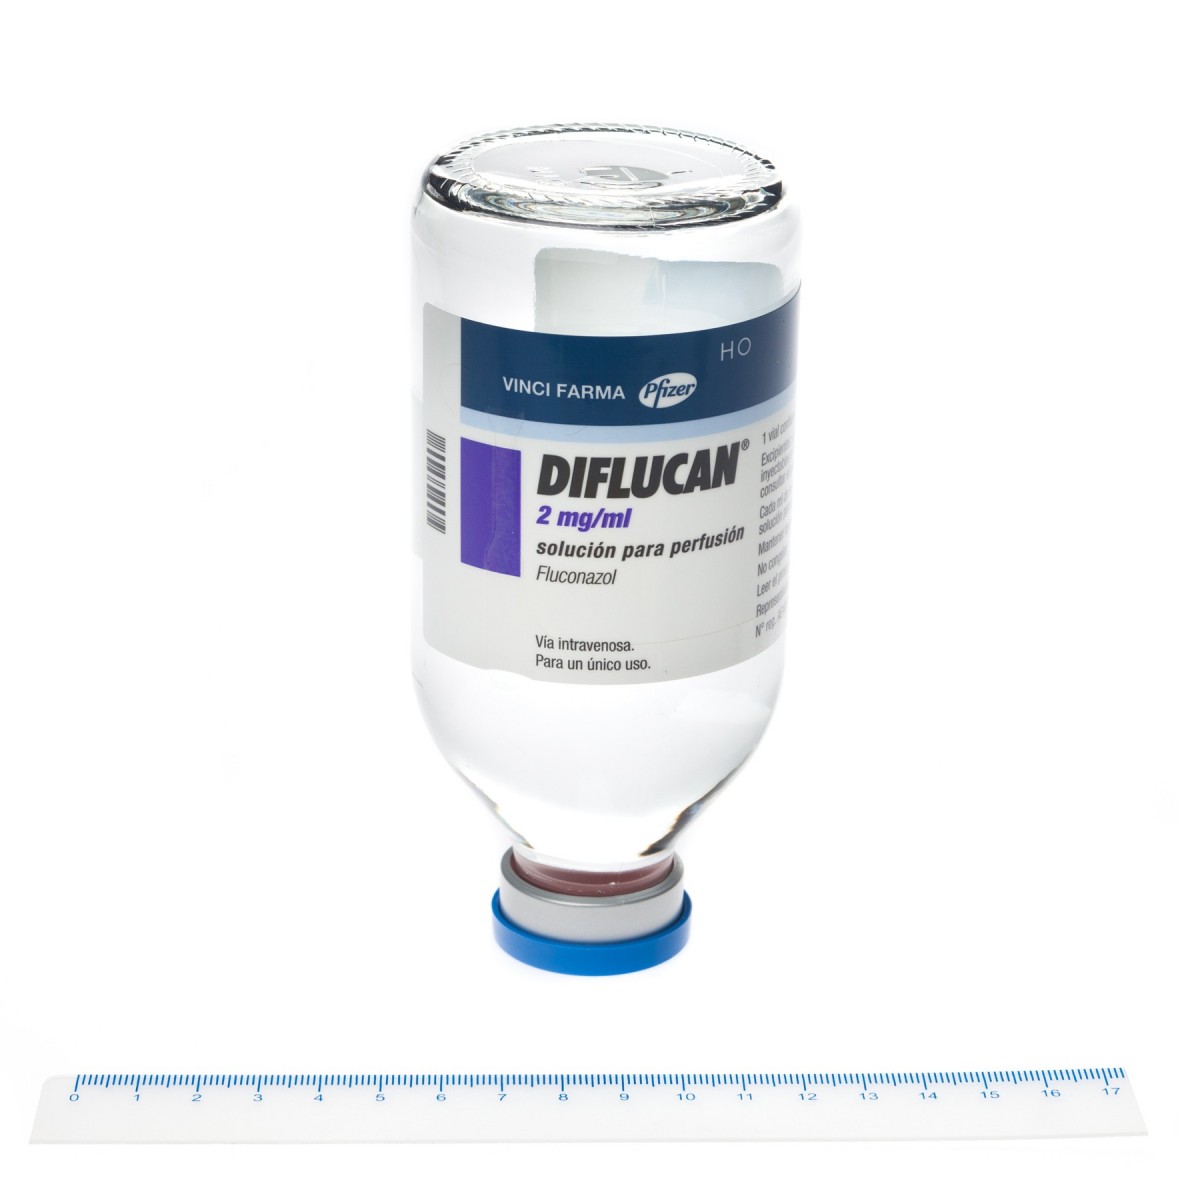 DIFLUCAN 2 mg/ml SOLUCION PARA PERFUSION , 48 viales de 50 ml fotografía de la forma farmacéutica.